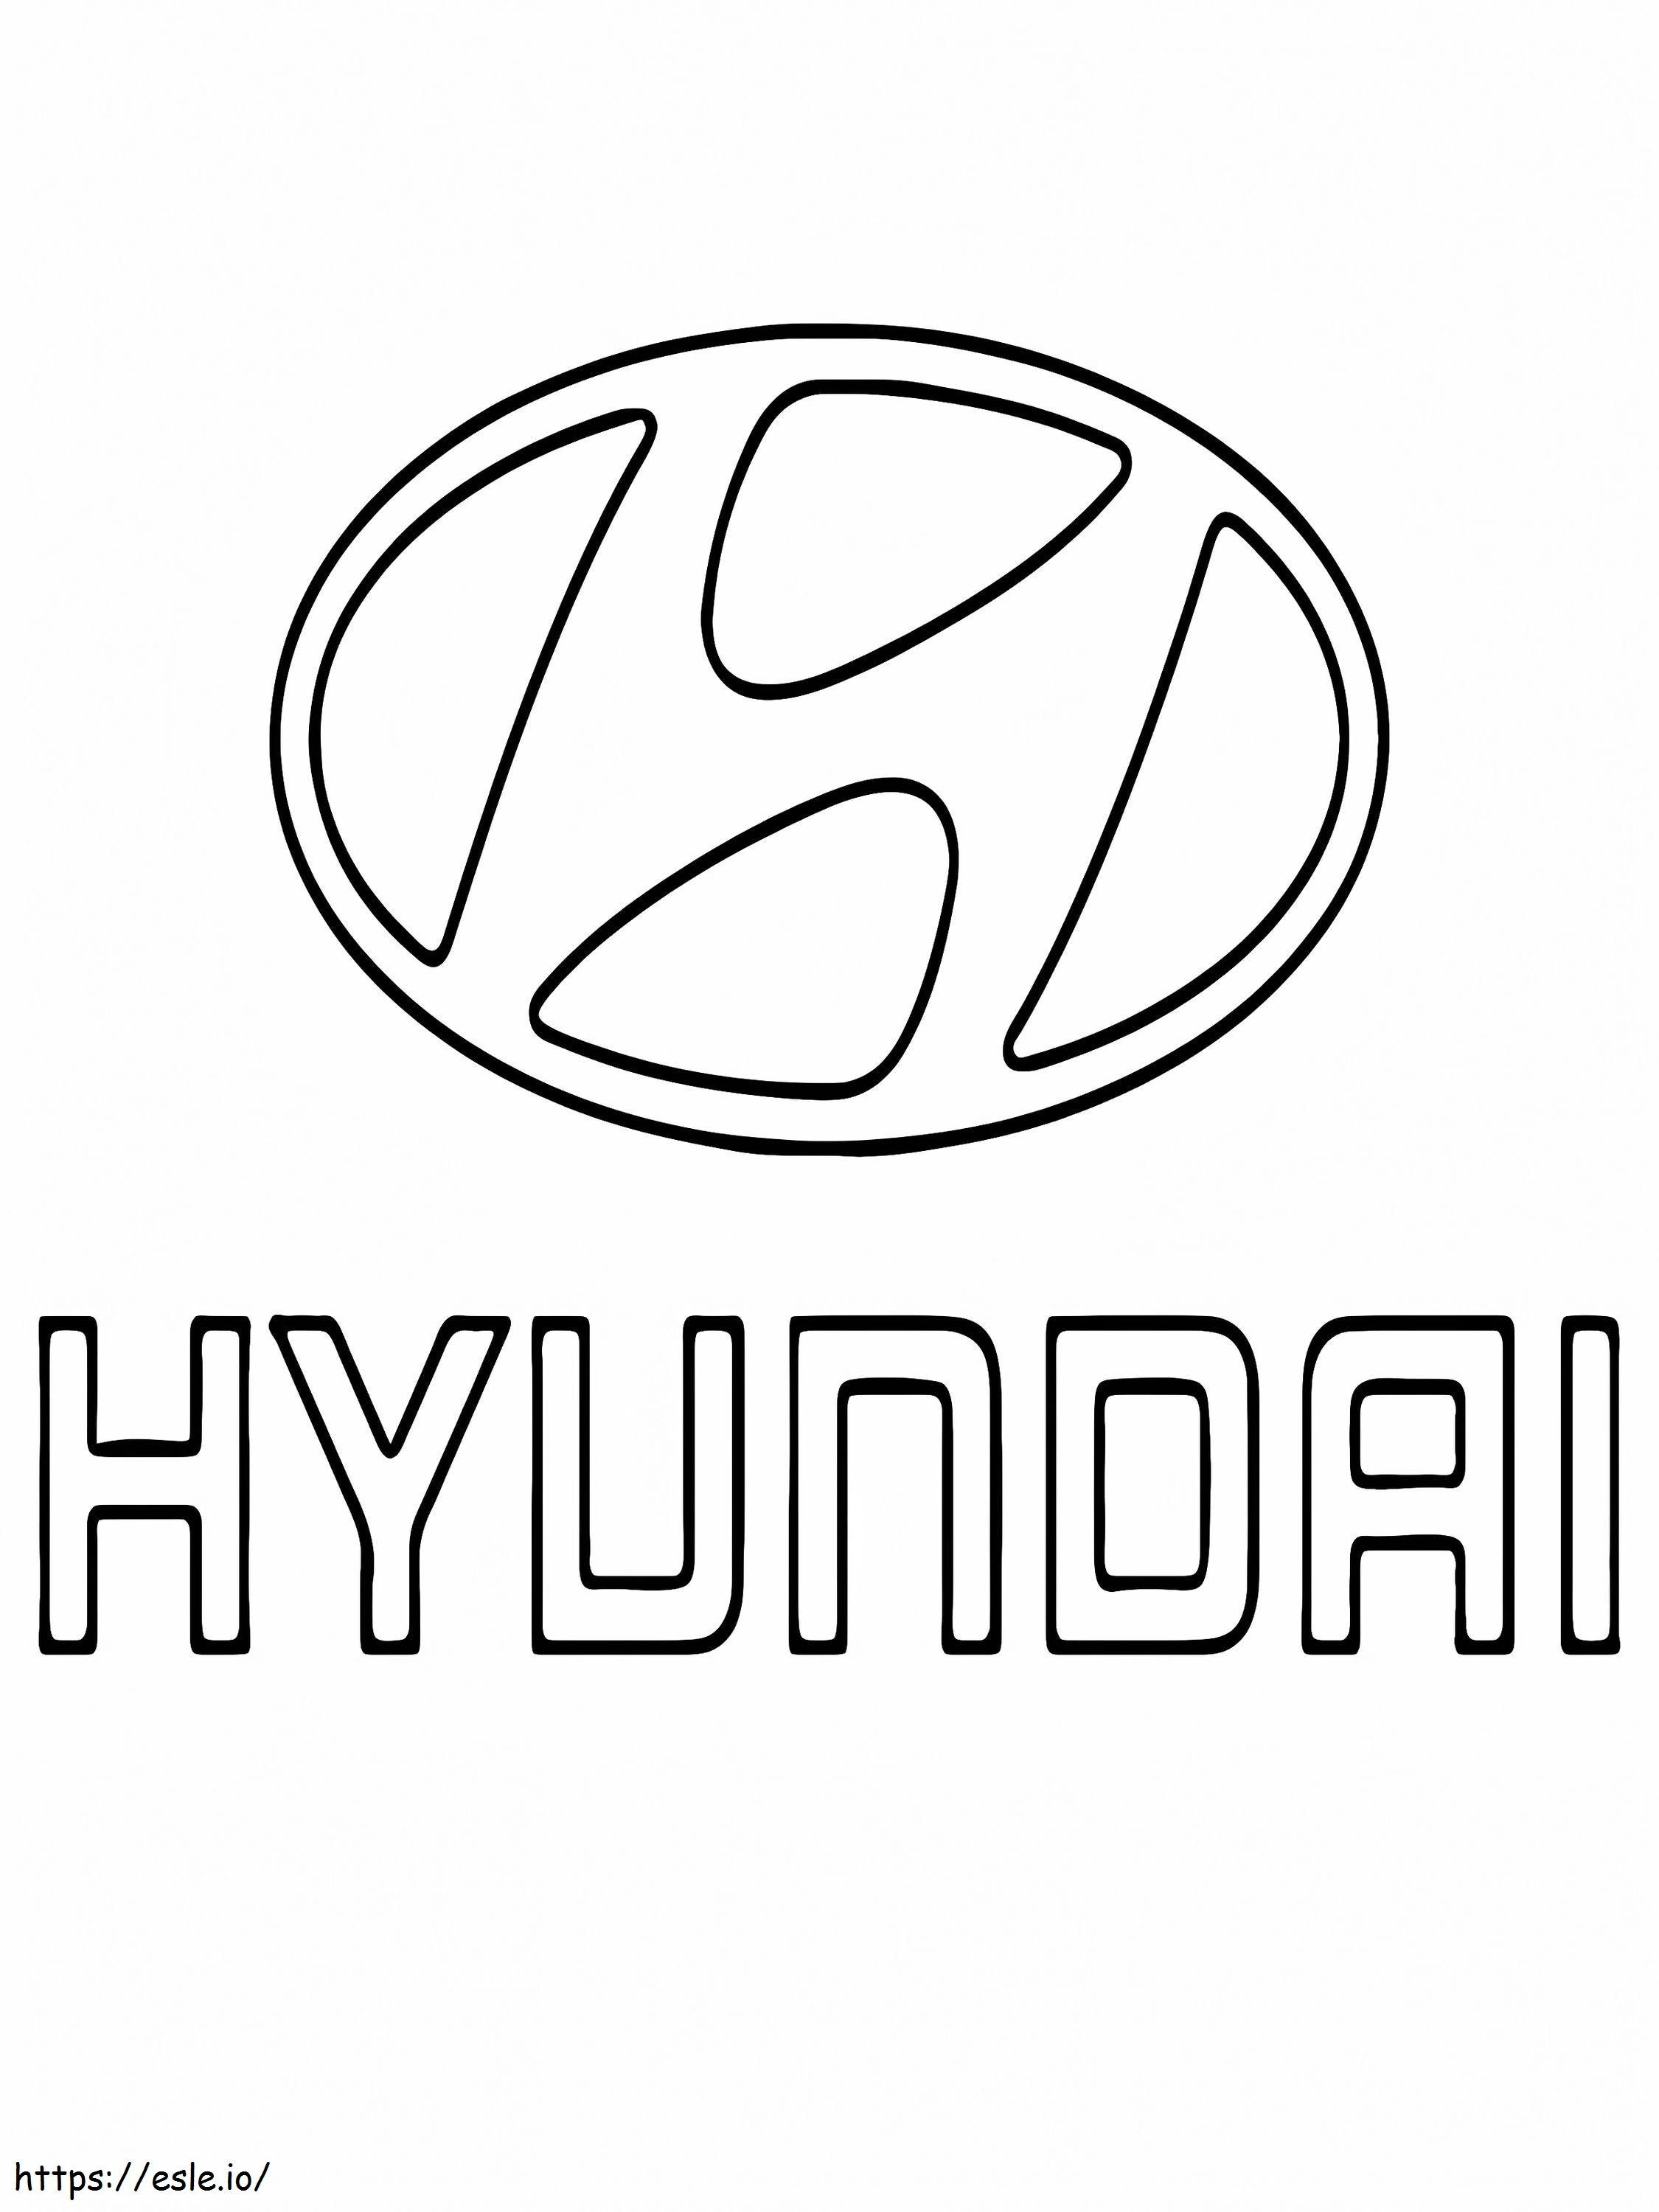 Hyundai Araba Logosu boyama